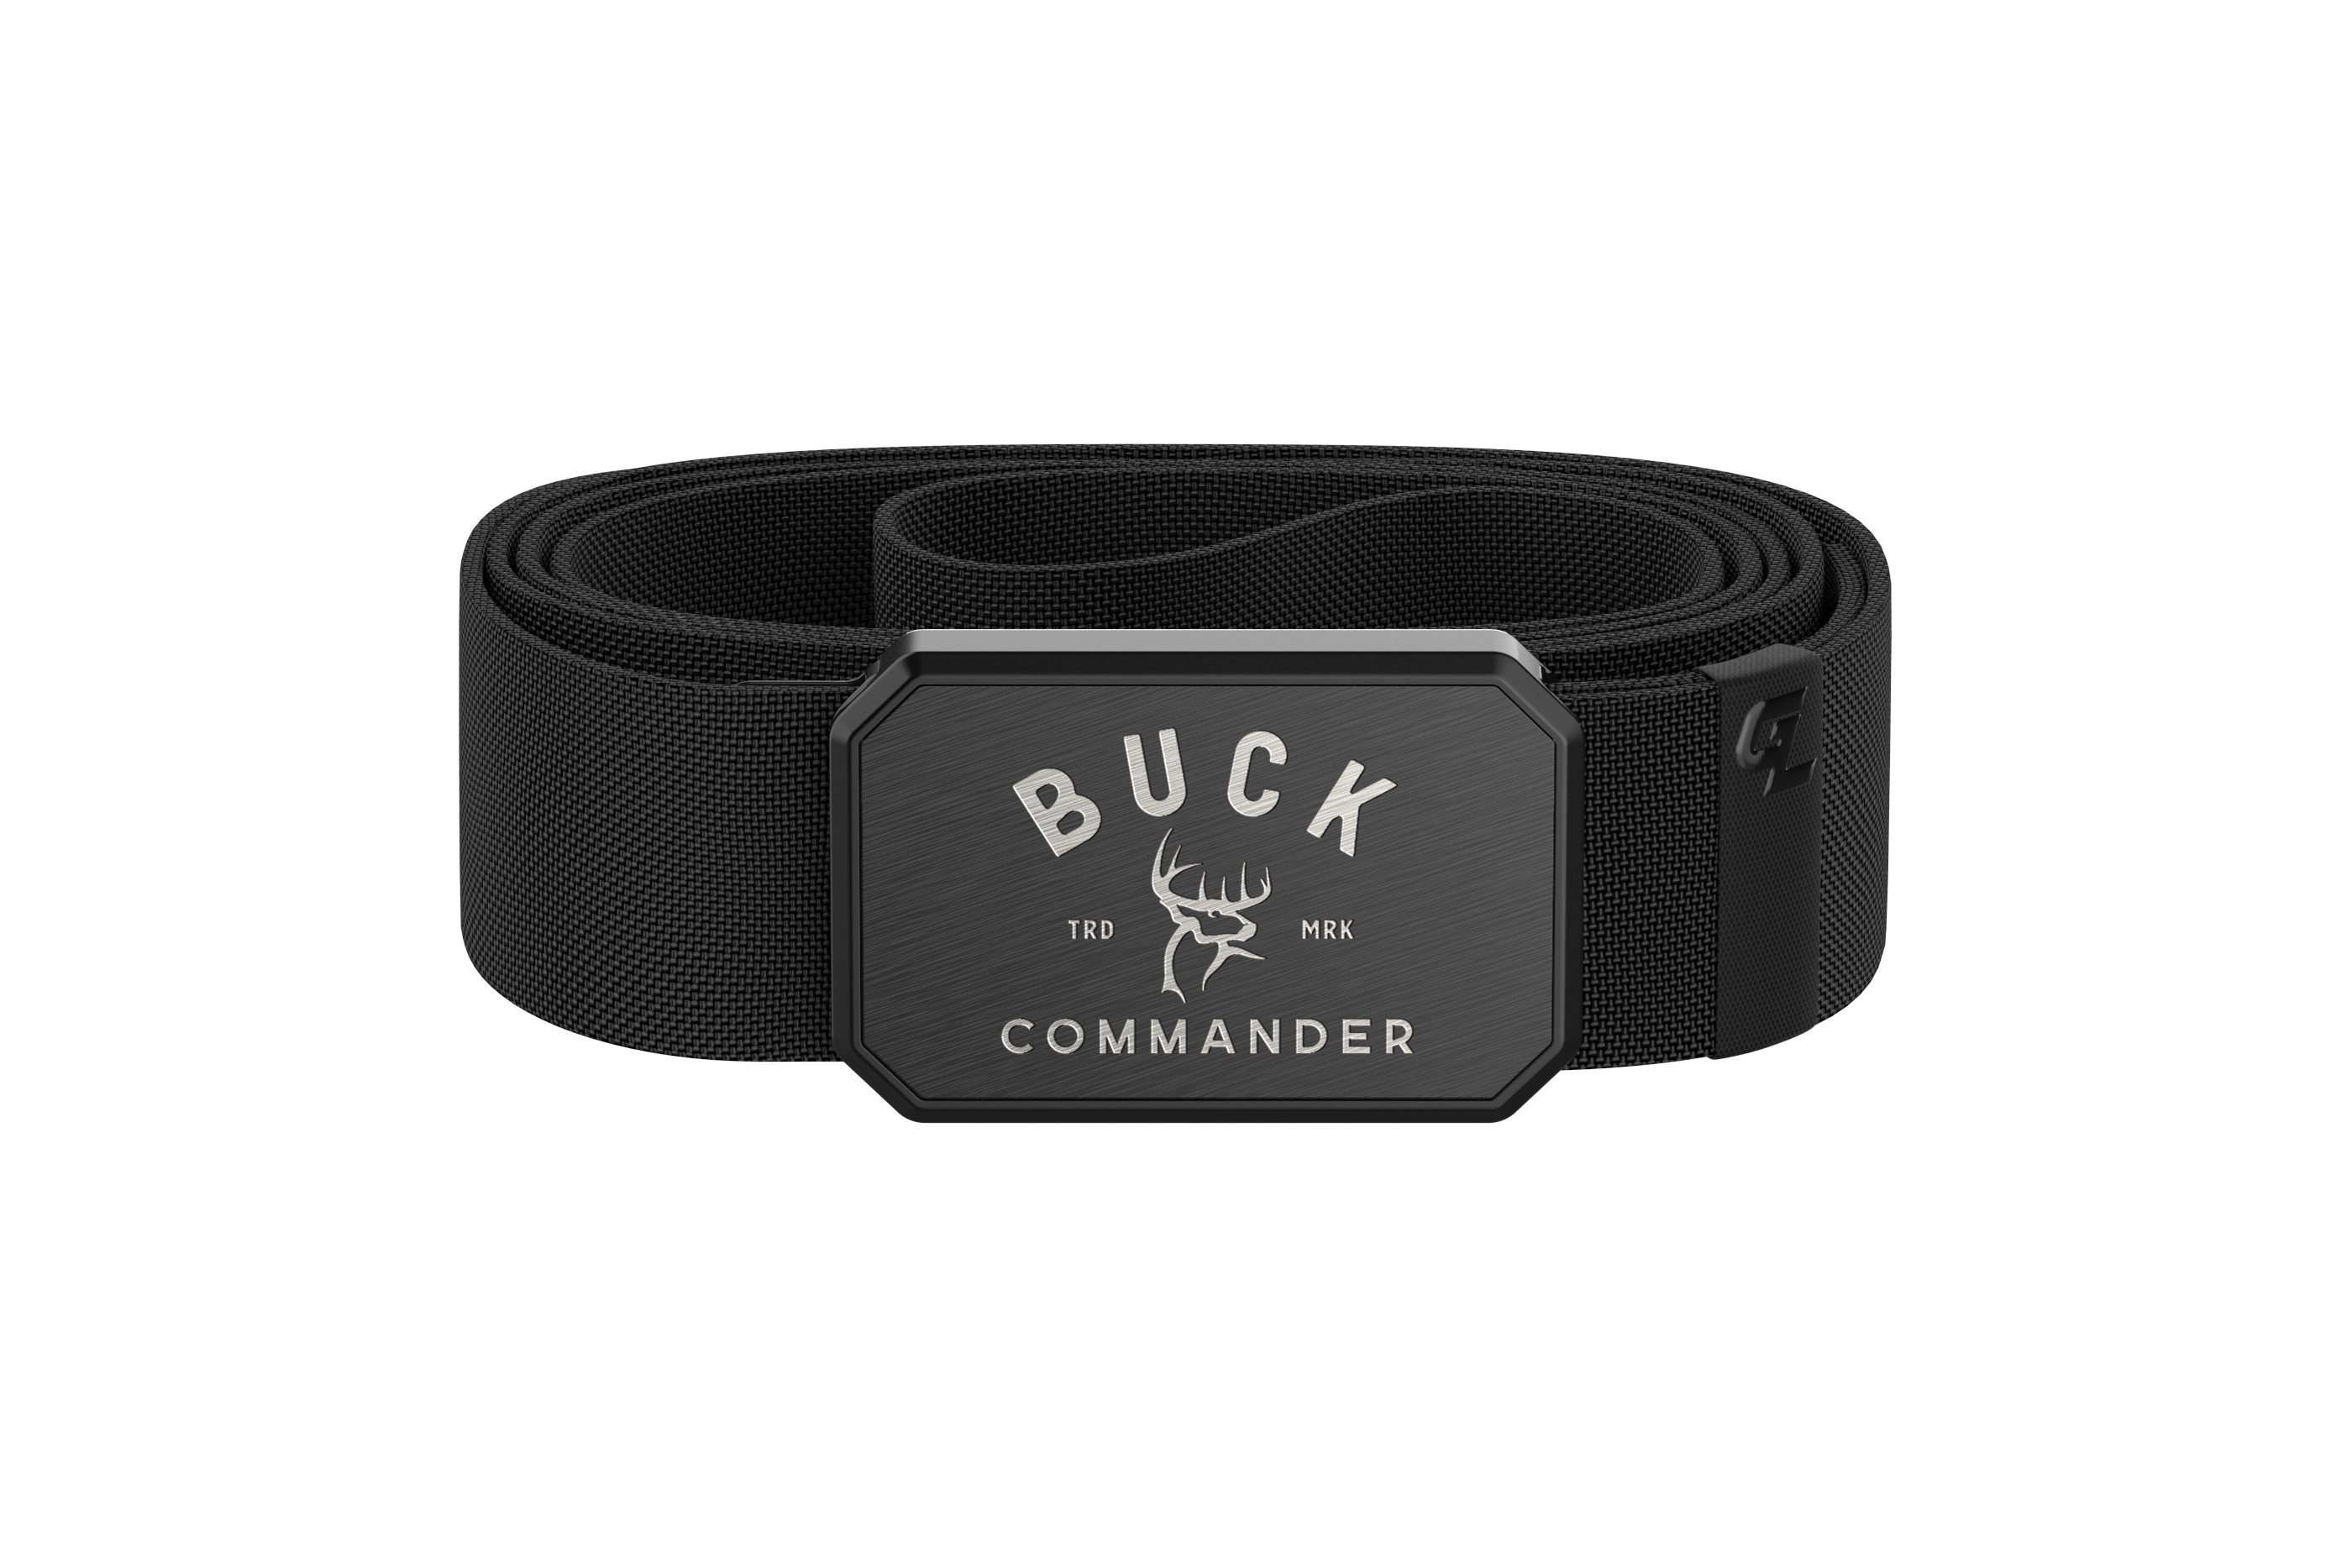 buck commander black belt accordion view 2